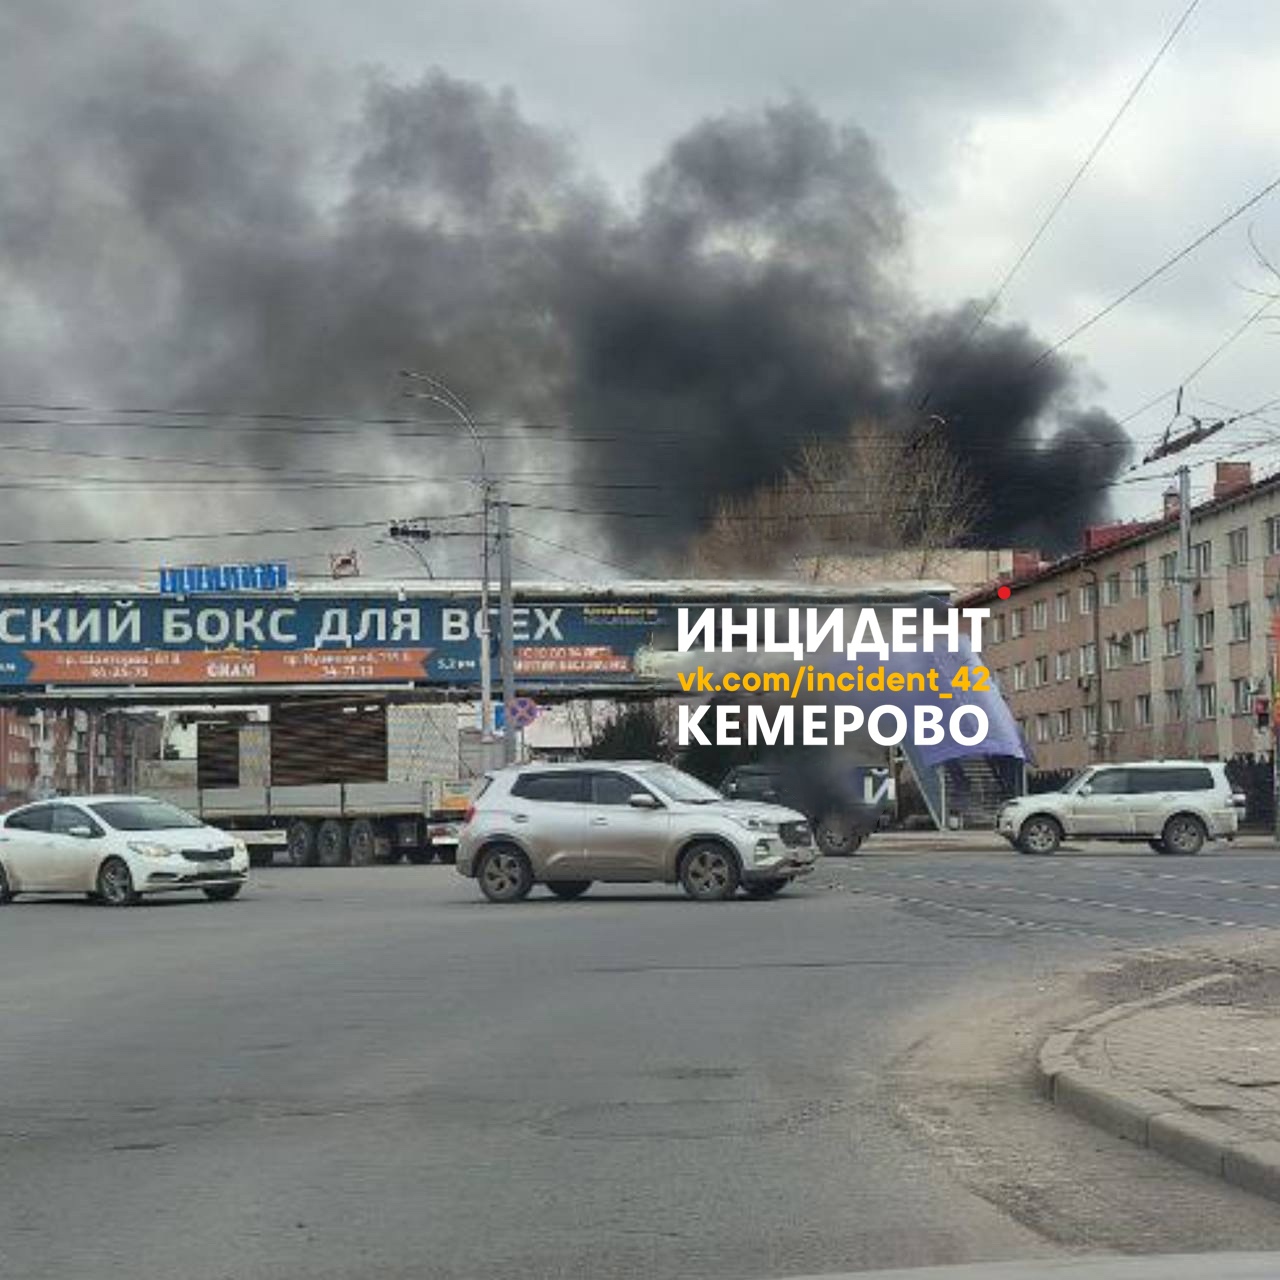 Площадь пожара в центре Кемерова достигла 600 «квадратов»